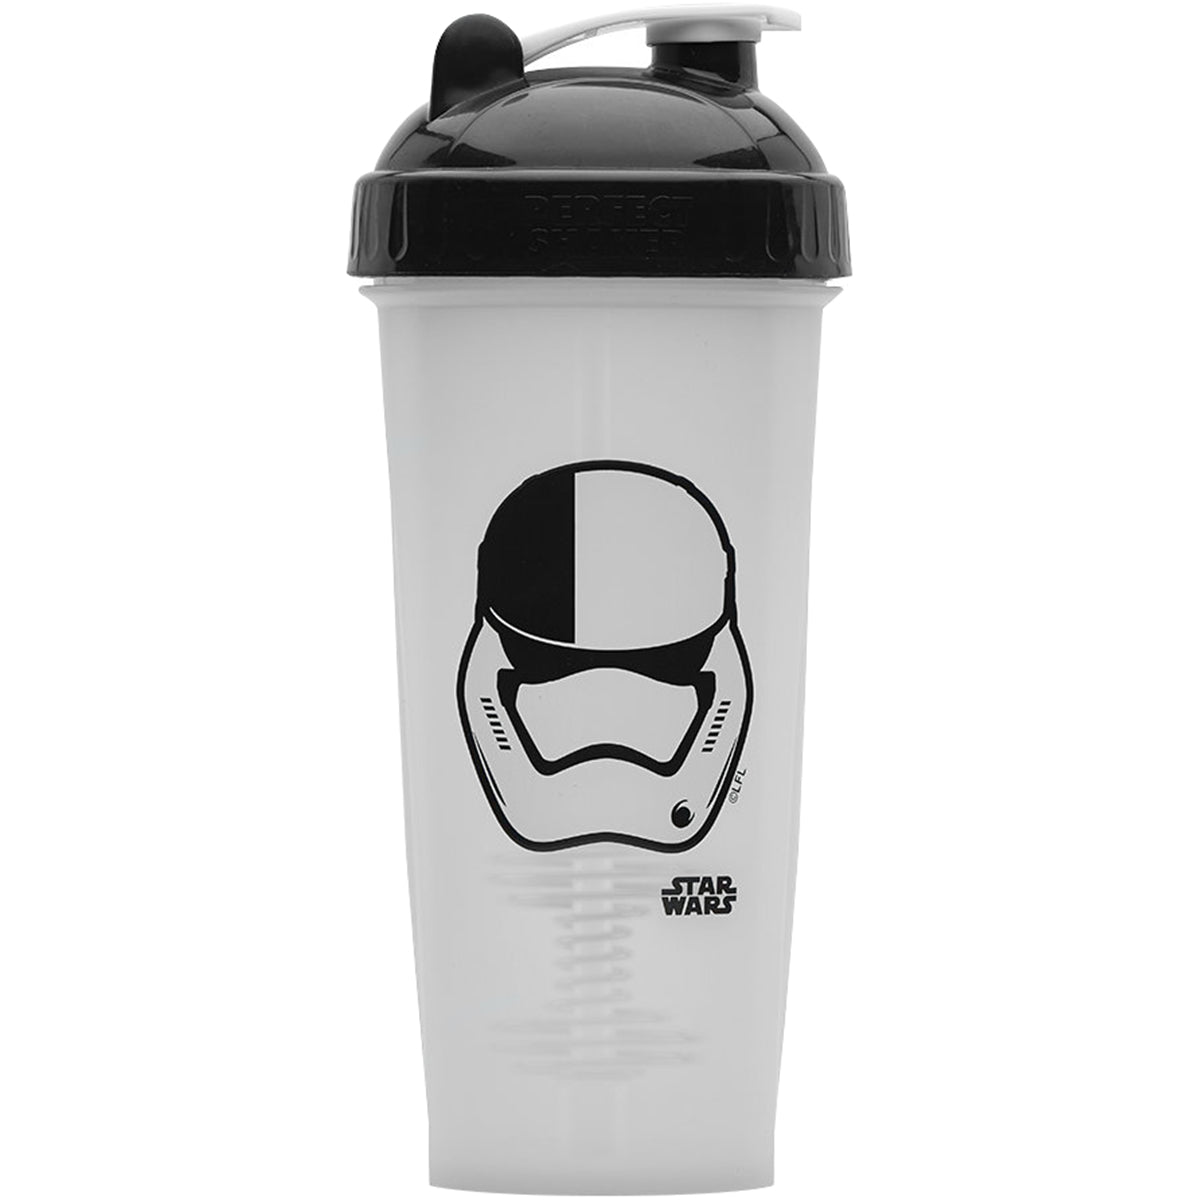 BlenderBottle Star Wars Pro Series 28-Ounce Shaker Bottle, Darth Vader Helmet